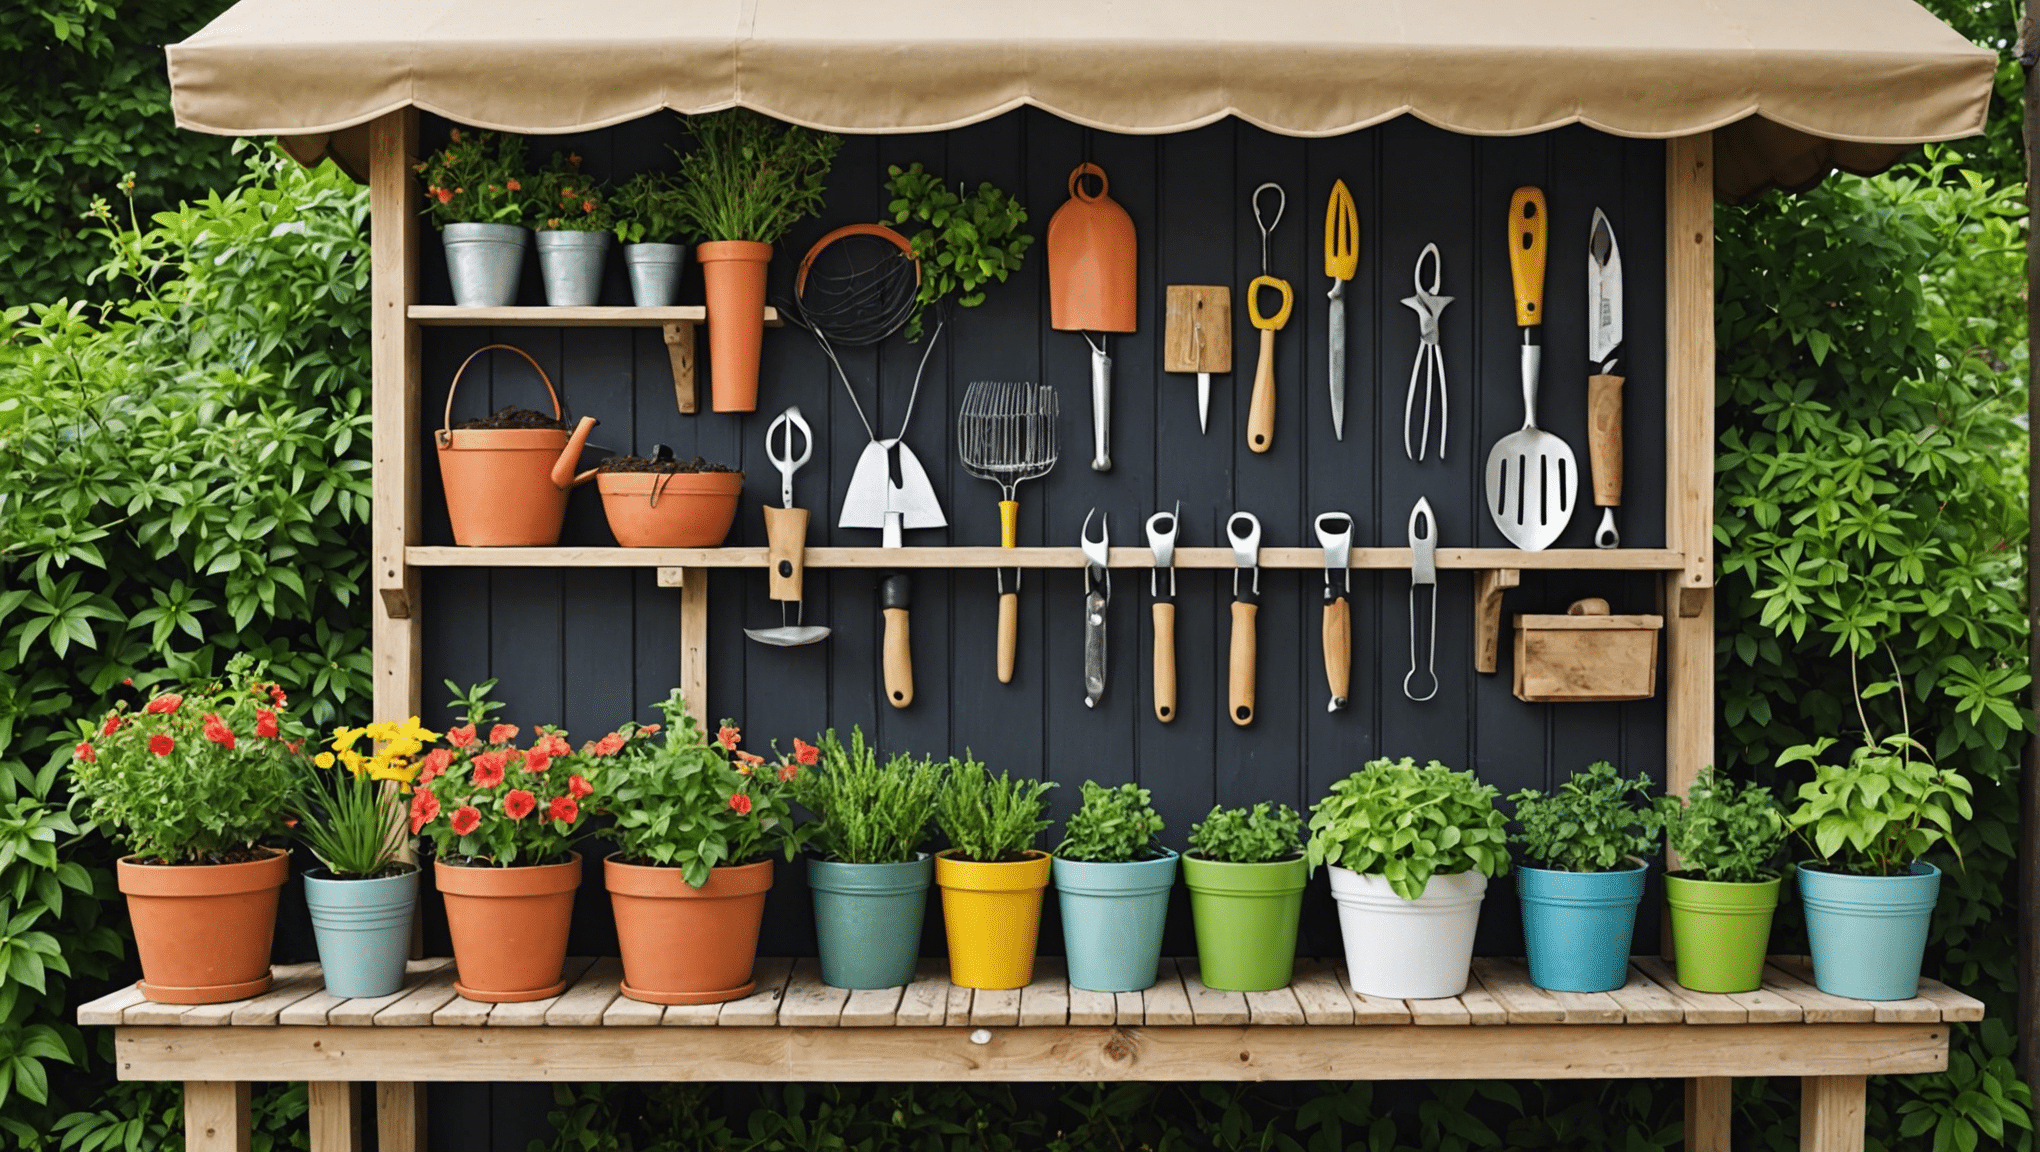 descubra ideias criativas de armazenamento de ferramentas de jardinagem para manter seu equipamento de jardim organizado e acessível com nossas dicas e soluções úteis.